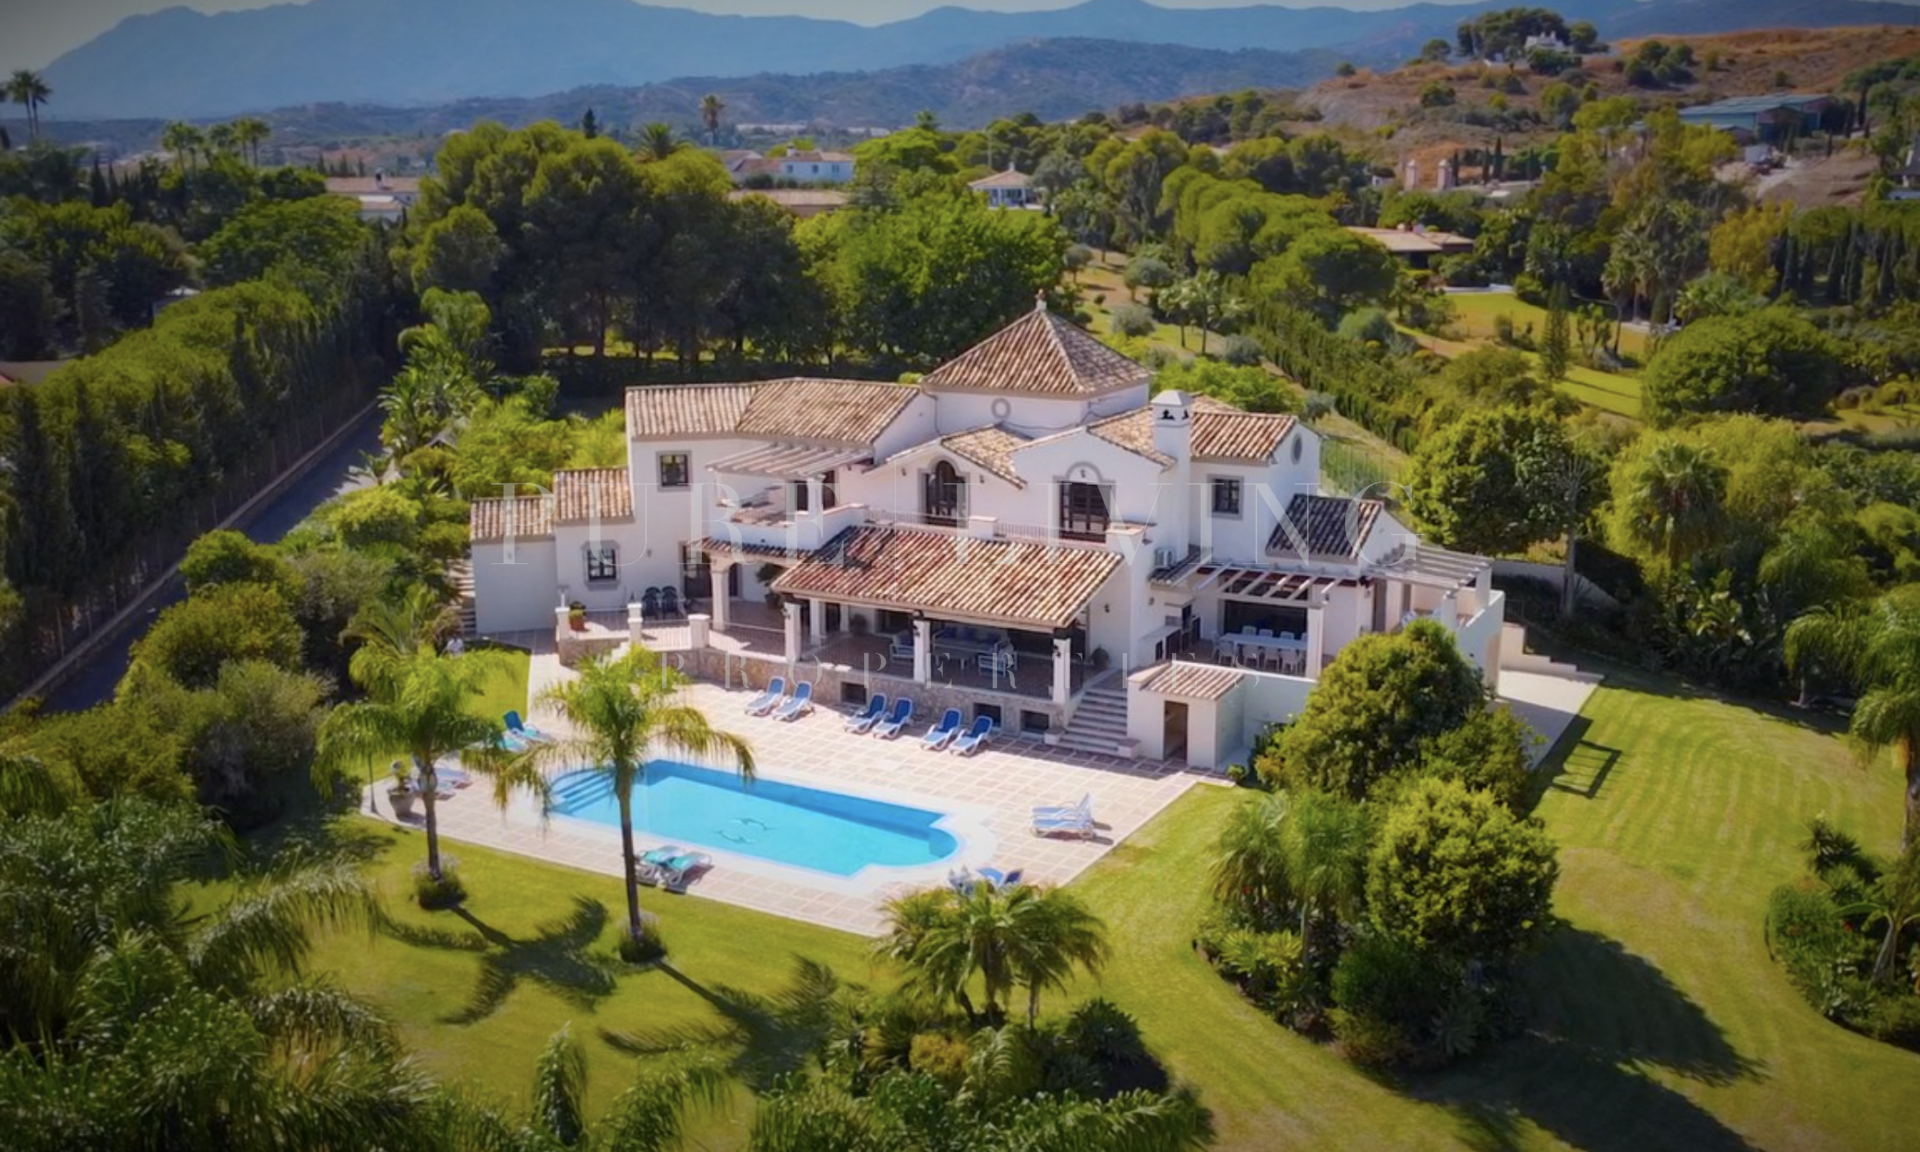 Andalucian seven bedroom villa for sale in Los Flamingos